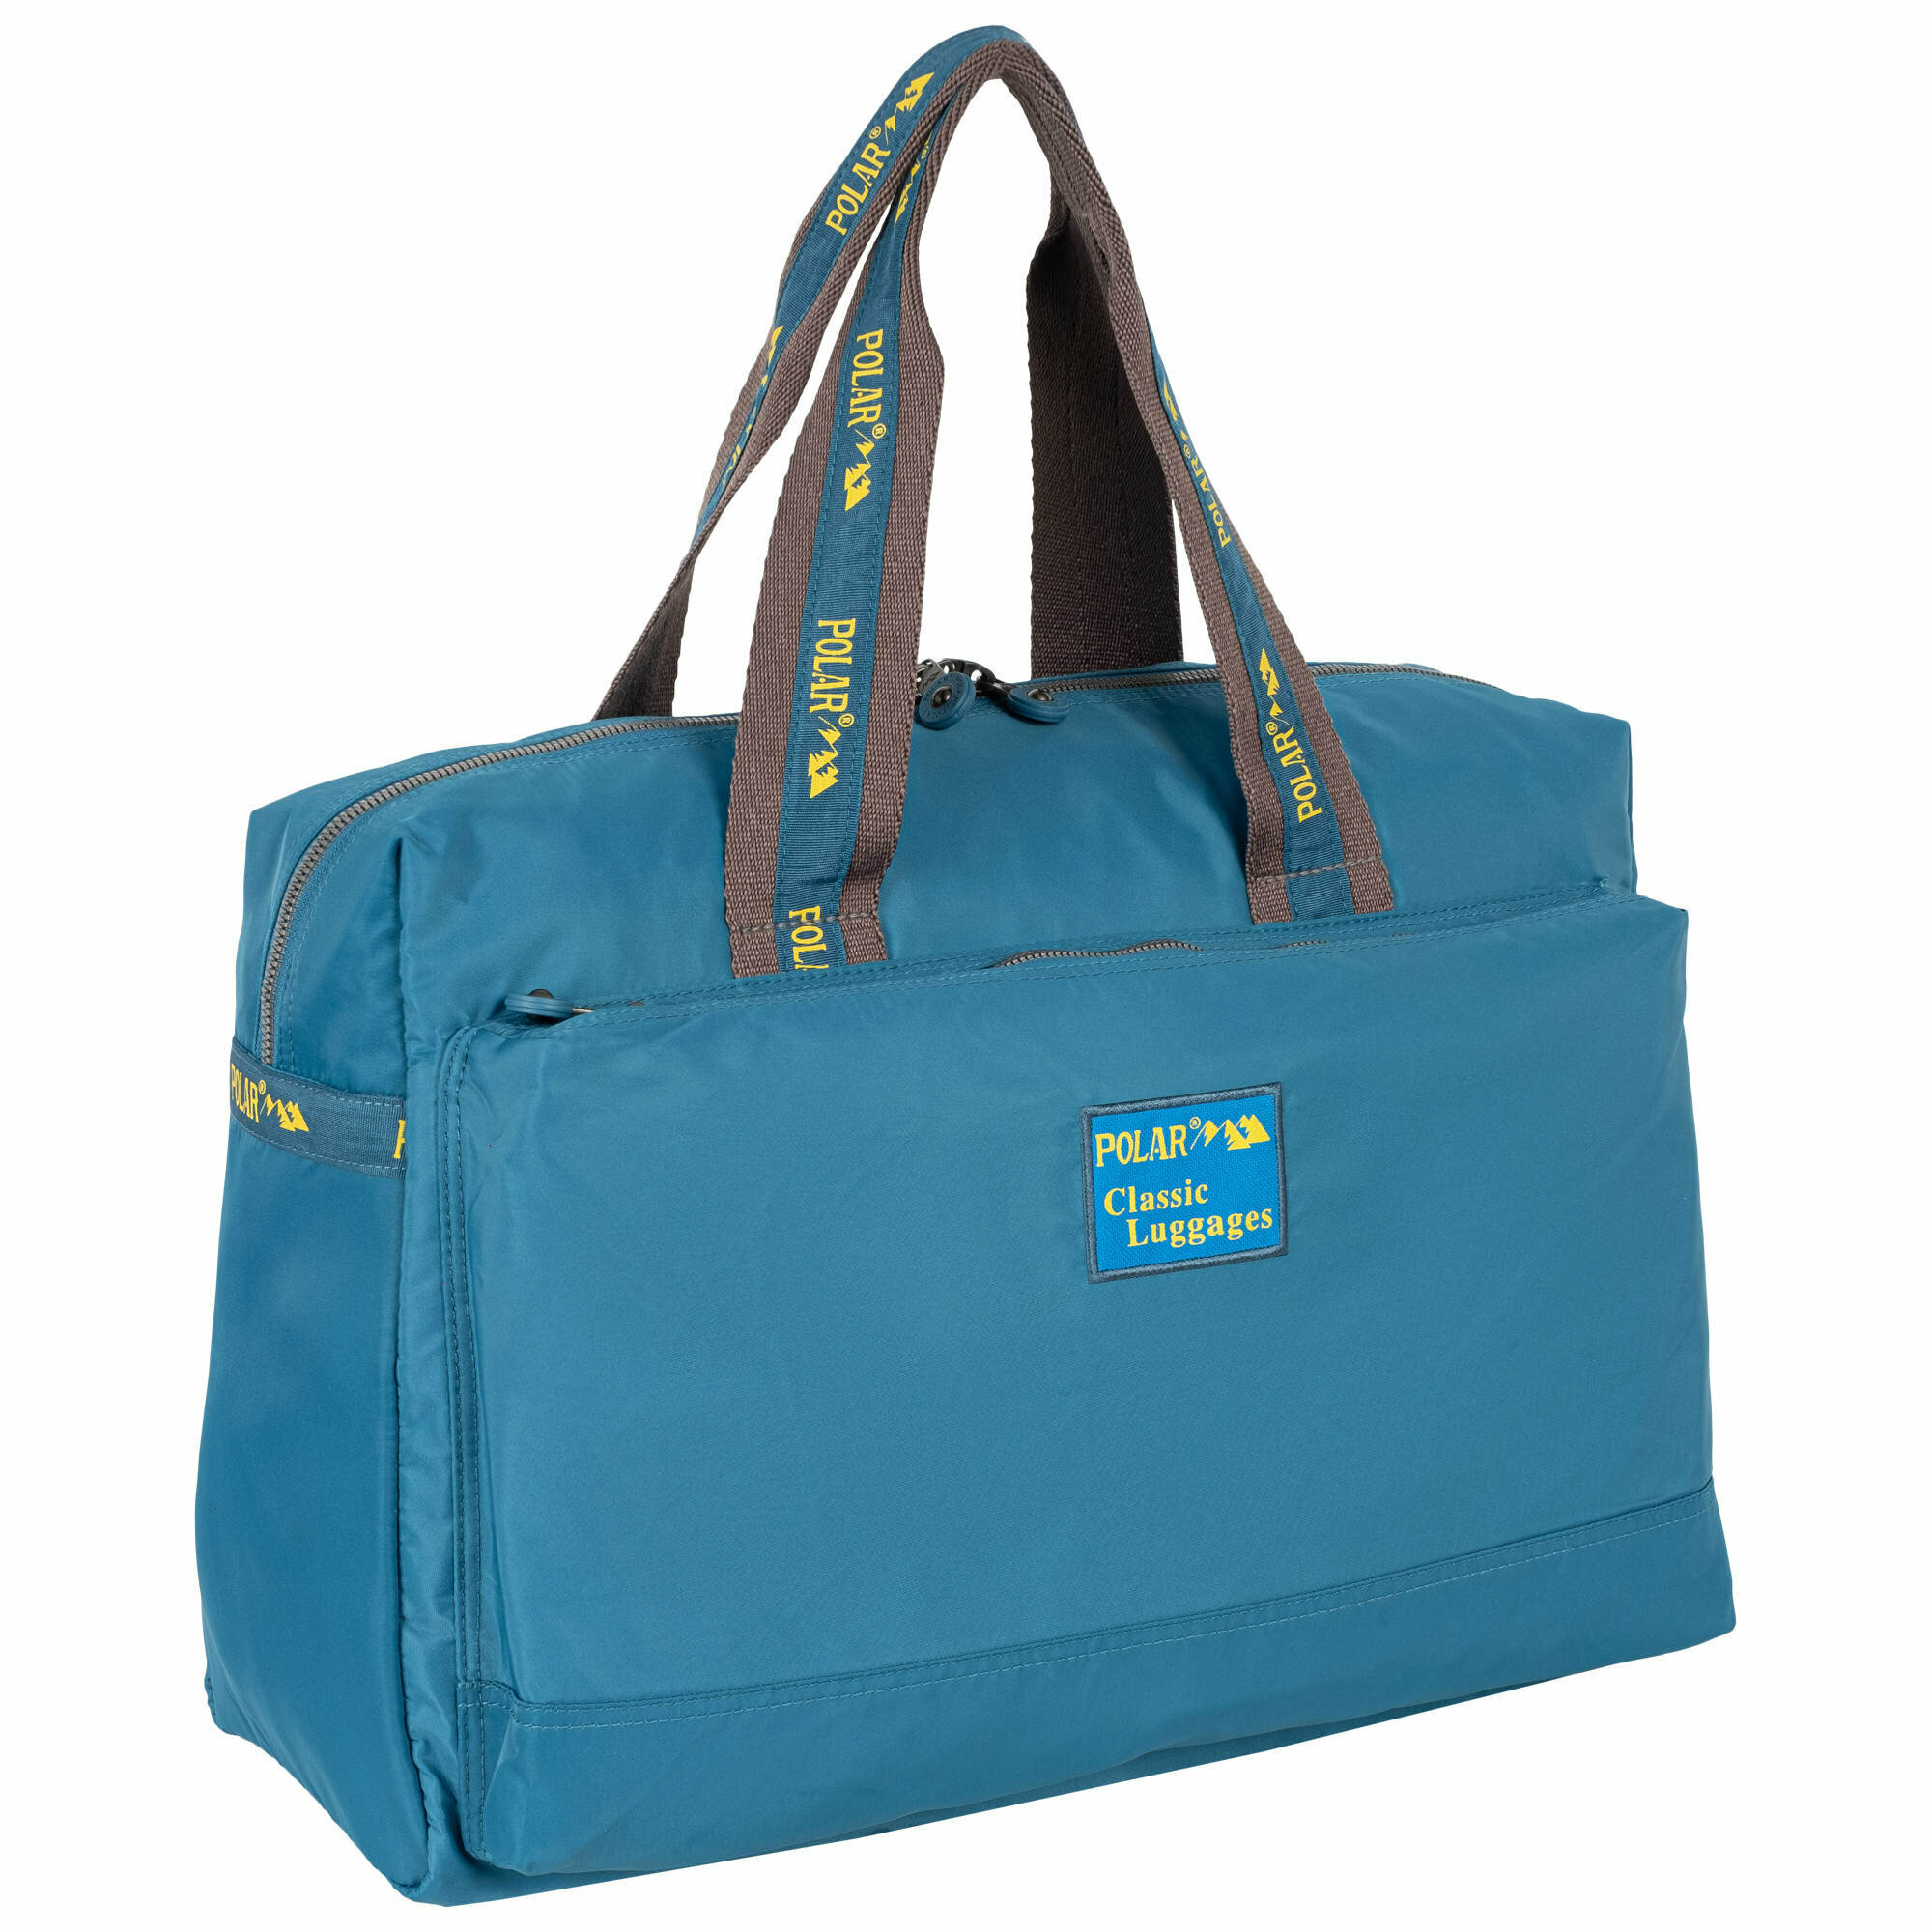 Дорожная сумка, спортивная сумка POLAR, сумка на плечо,ручная кладь, полиэстер 45 х 29 х 17